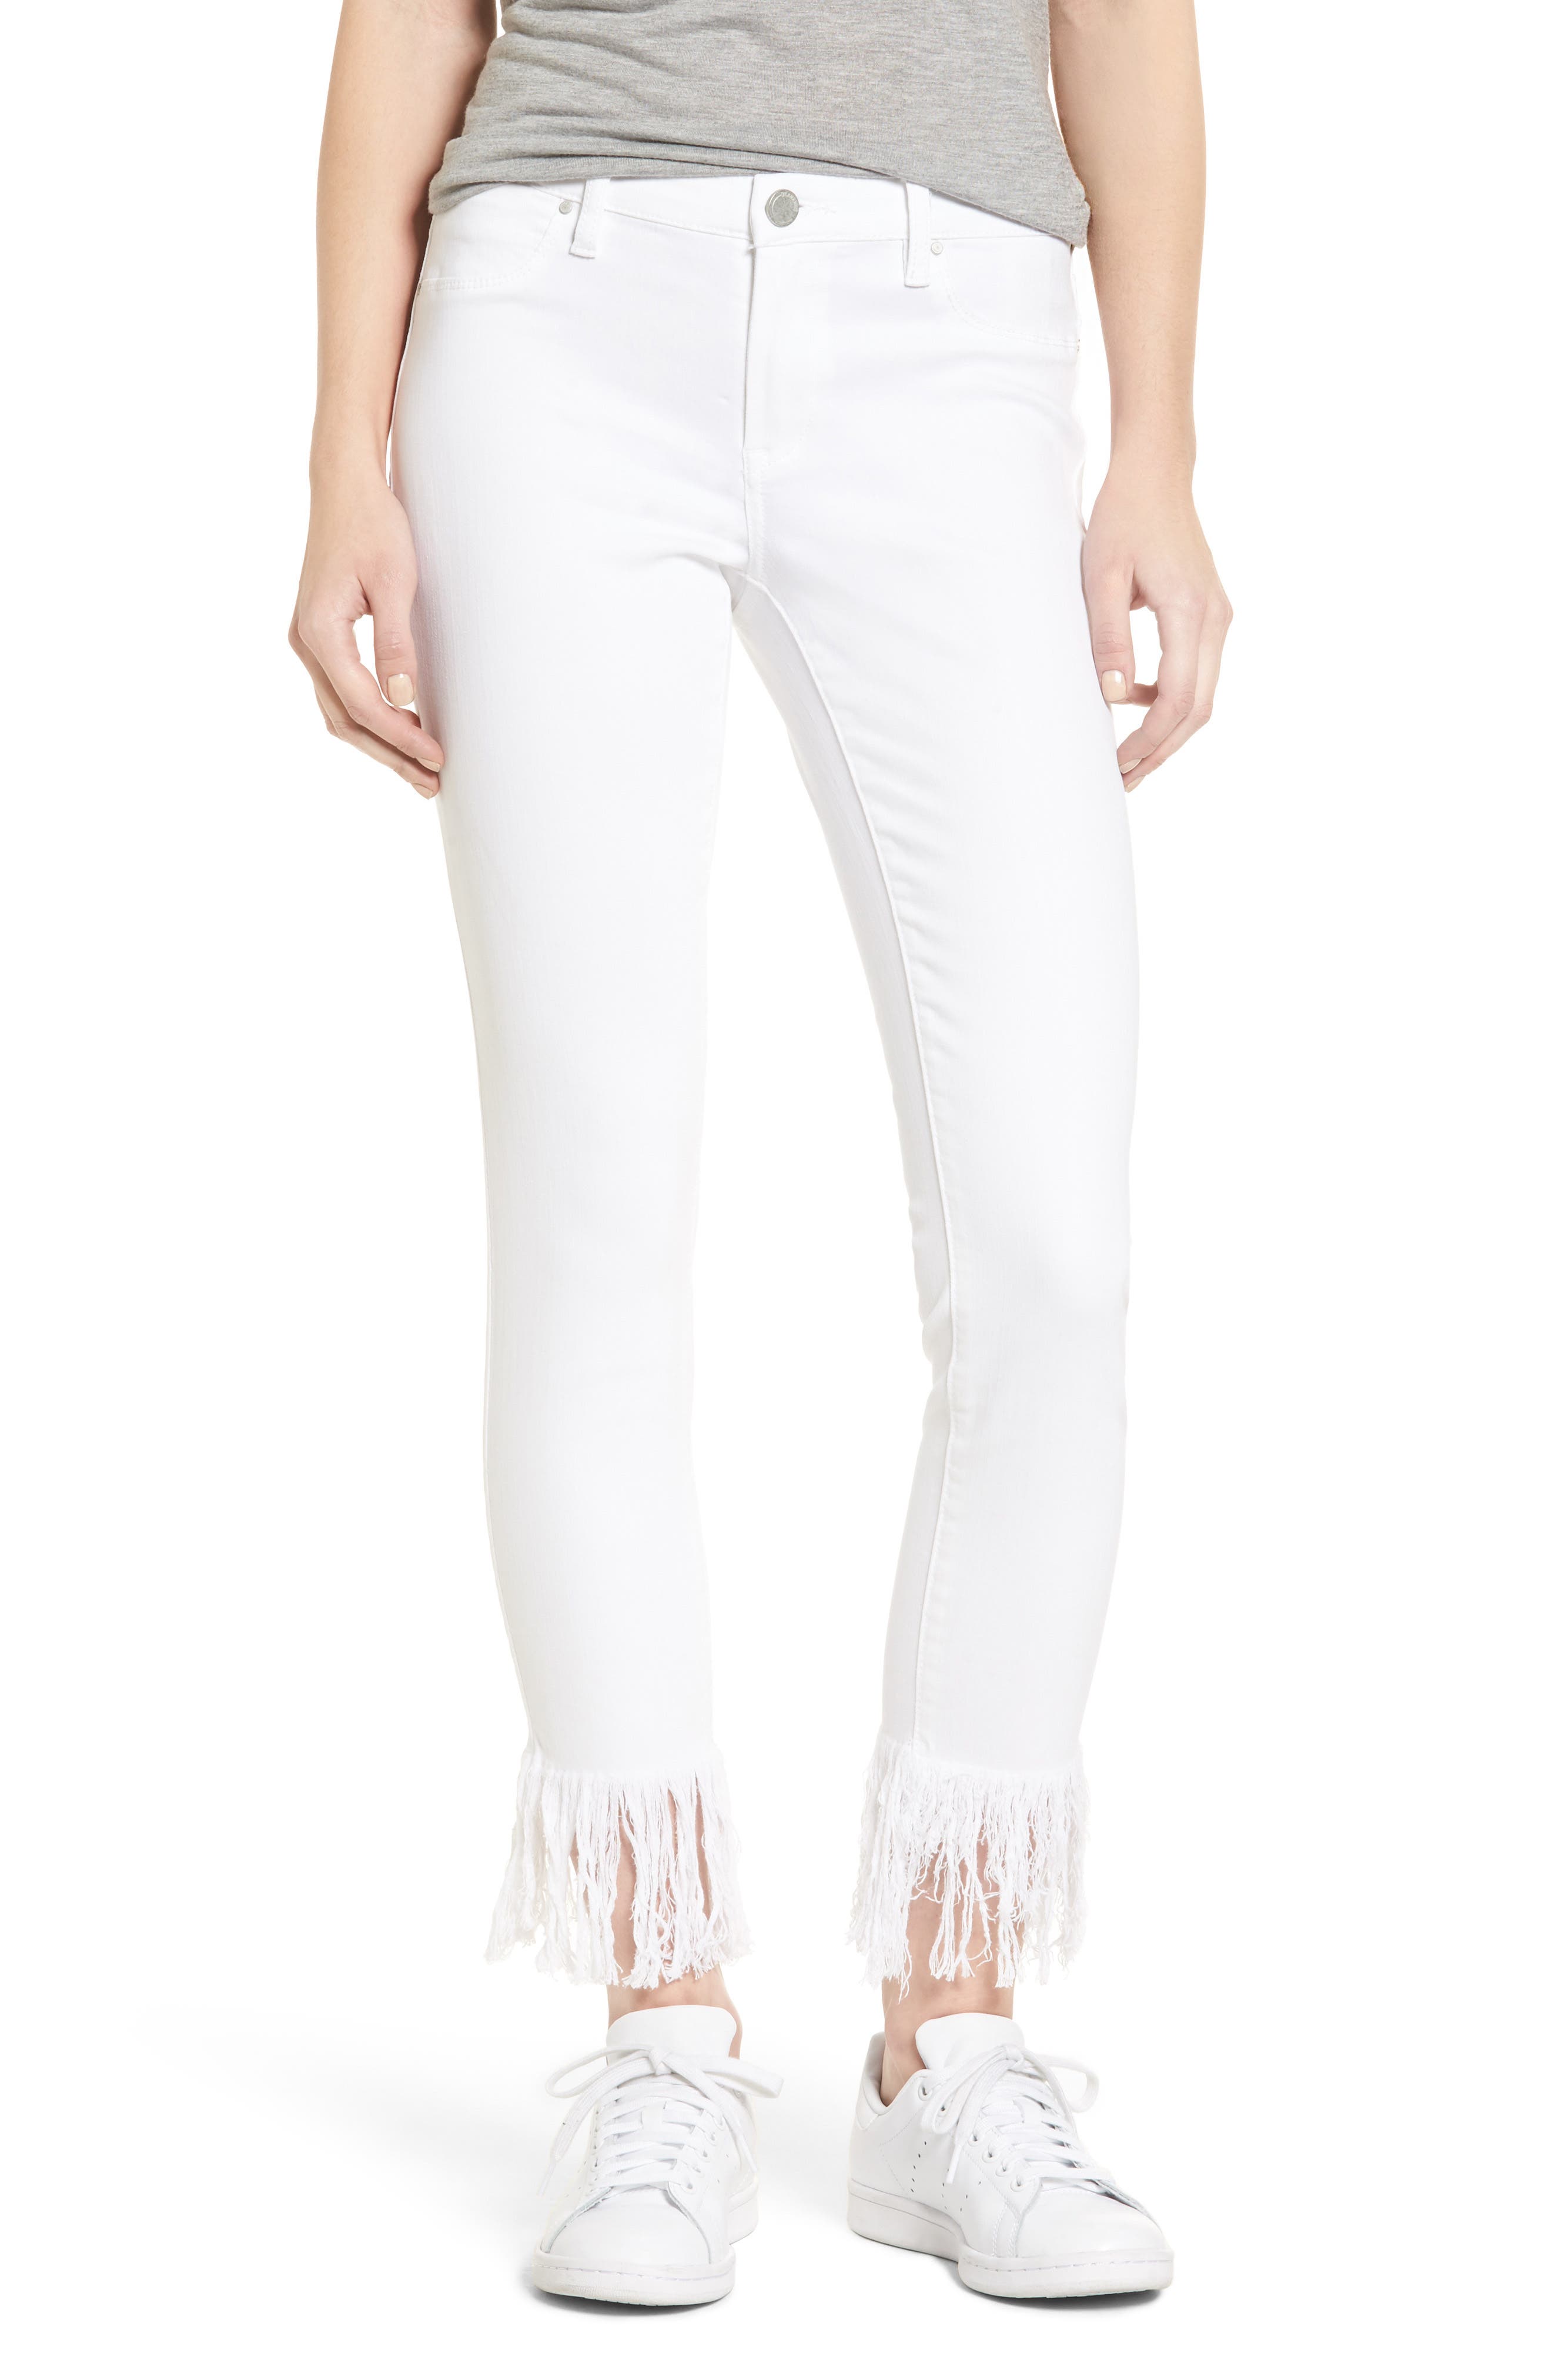 white fringe skinny jeans